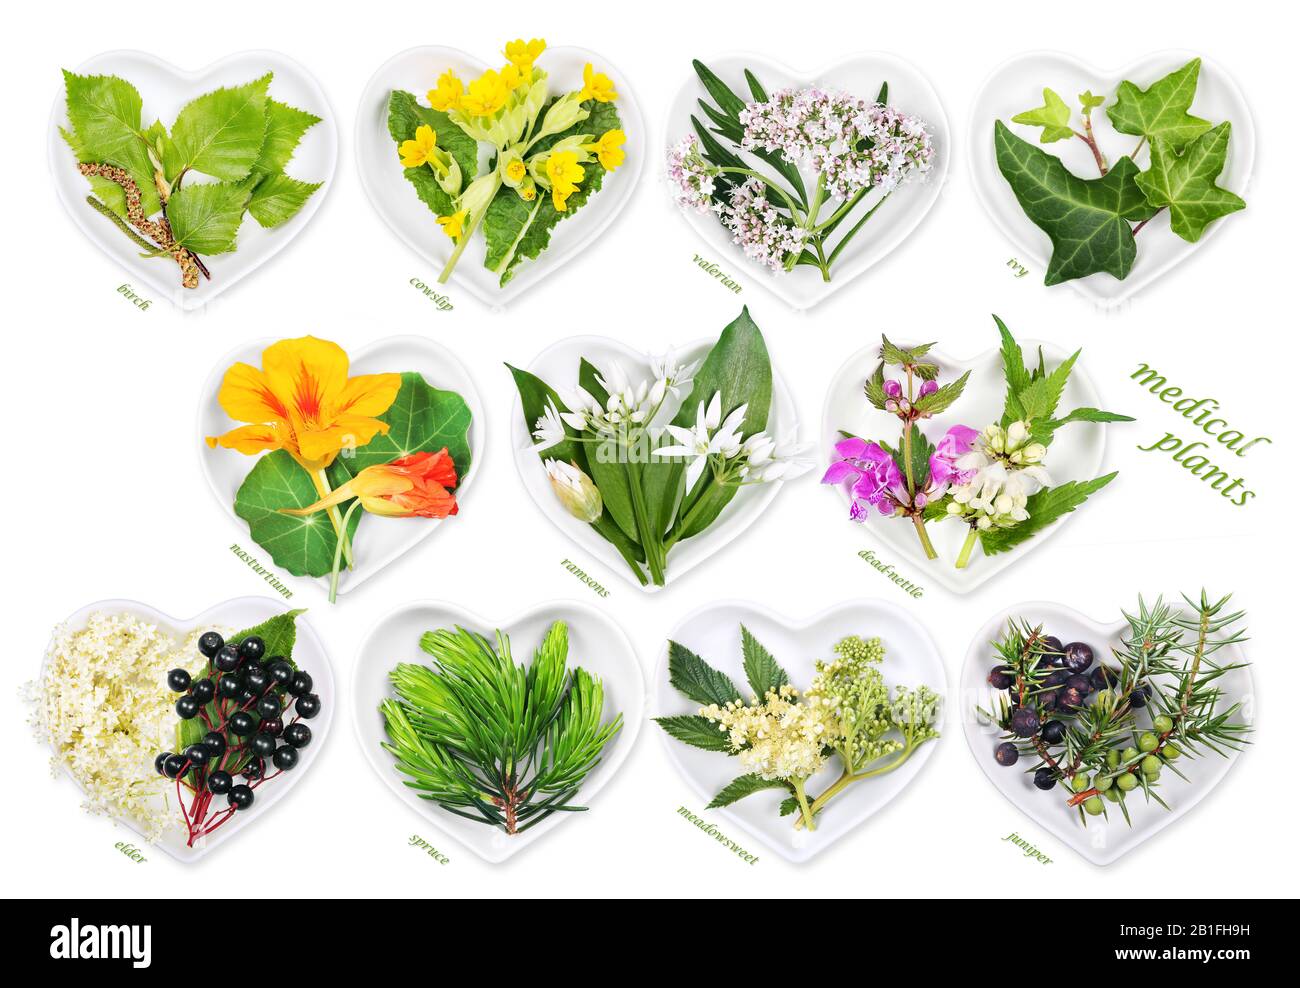 Medicina alternativa con plantas medicinales 5 Foto de stock